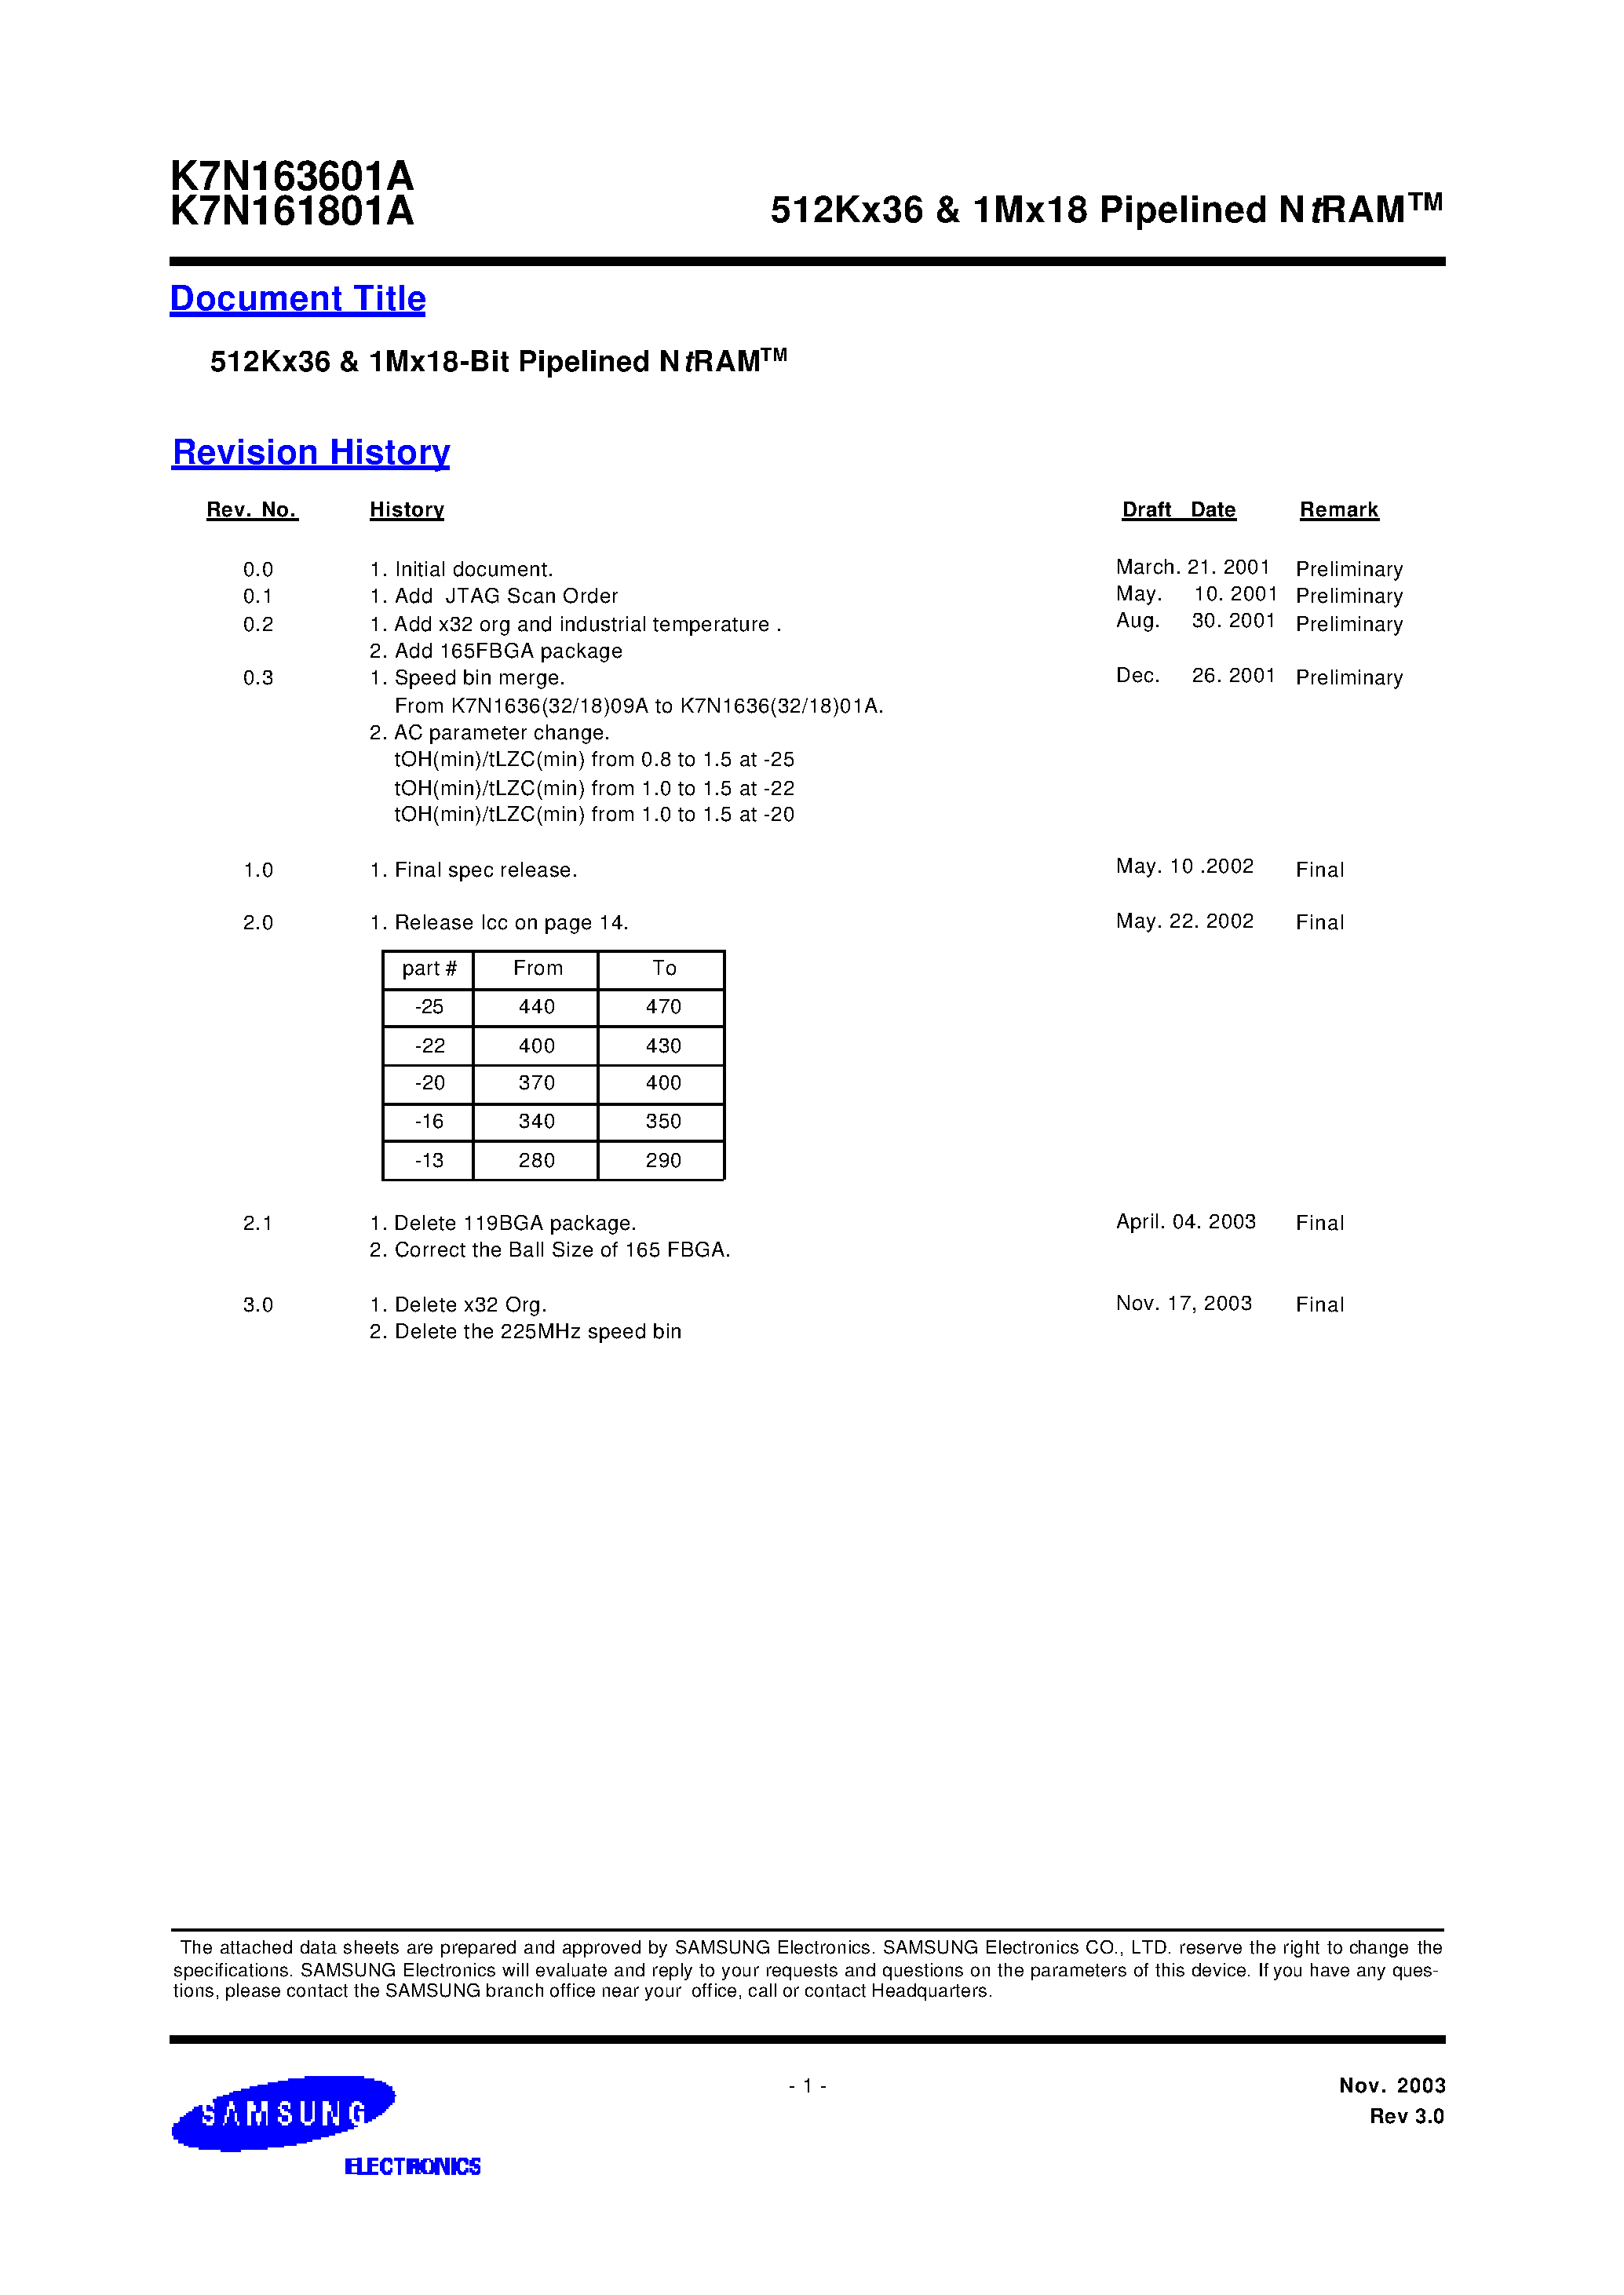 Даташит K7N163645A-Q(F)C(I)25 - 512Kx36 & 1Mx18 Pipelined NtRAM страница 1